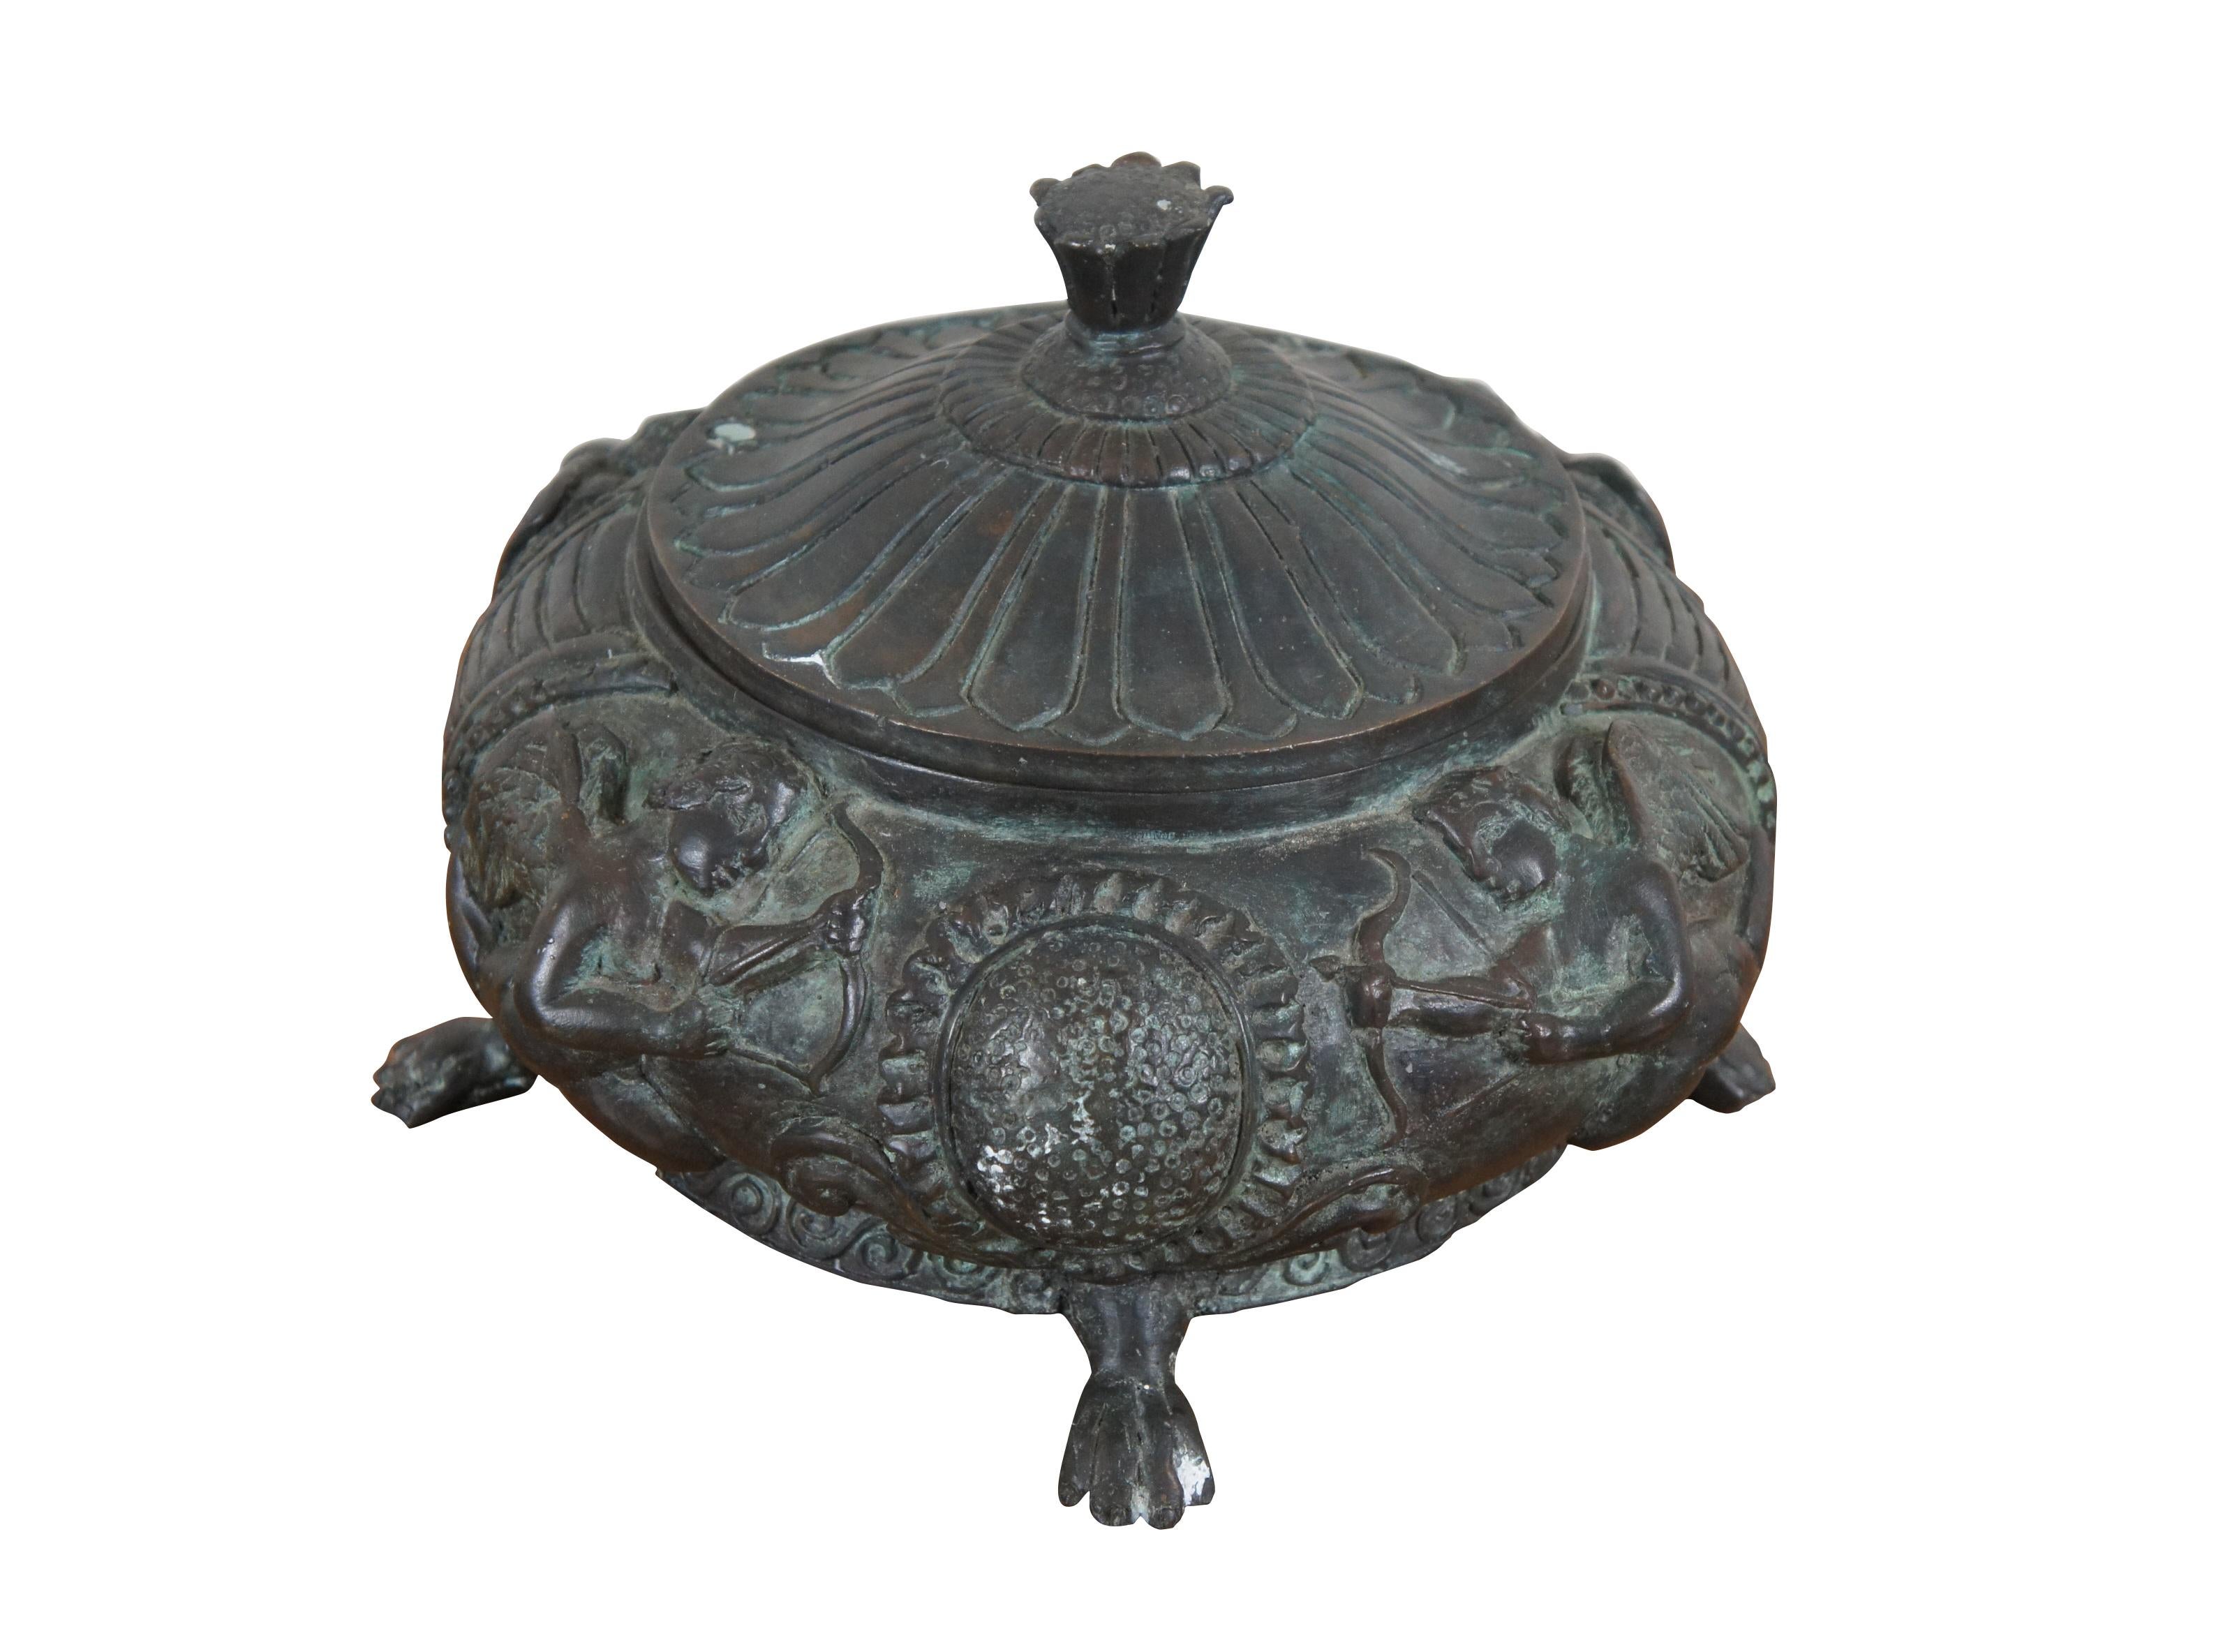 Seltene Maitland Smith Bronze-Urne mit Deckel und Fuß, niedrige runde Form auf Tatzenfüßen, verziert mit einem griechischen Design von Putten in Hochrelief, mit einem Deckel in Form einer Sonnenblume.

Abmessungen:
11,5